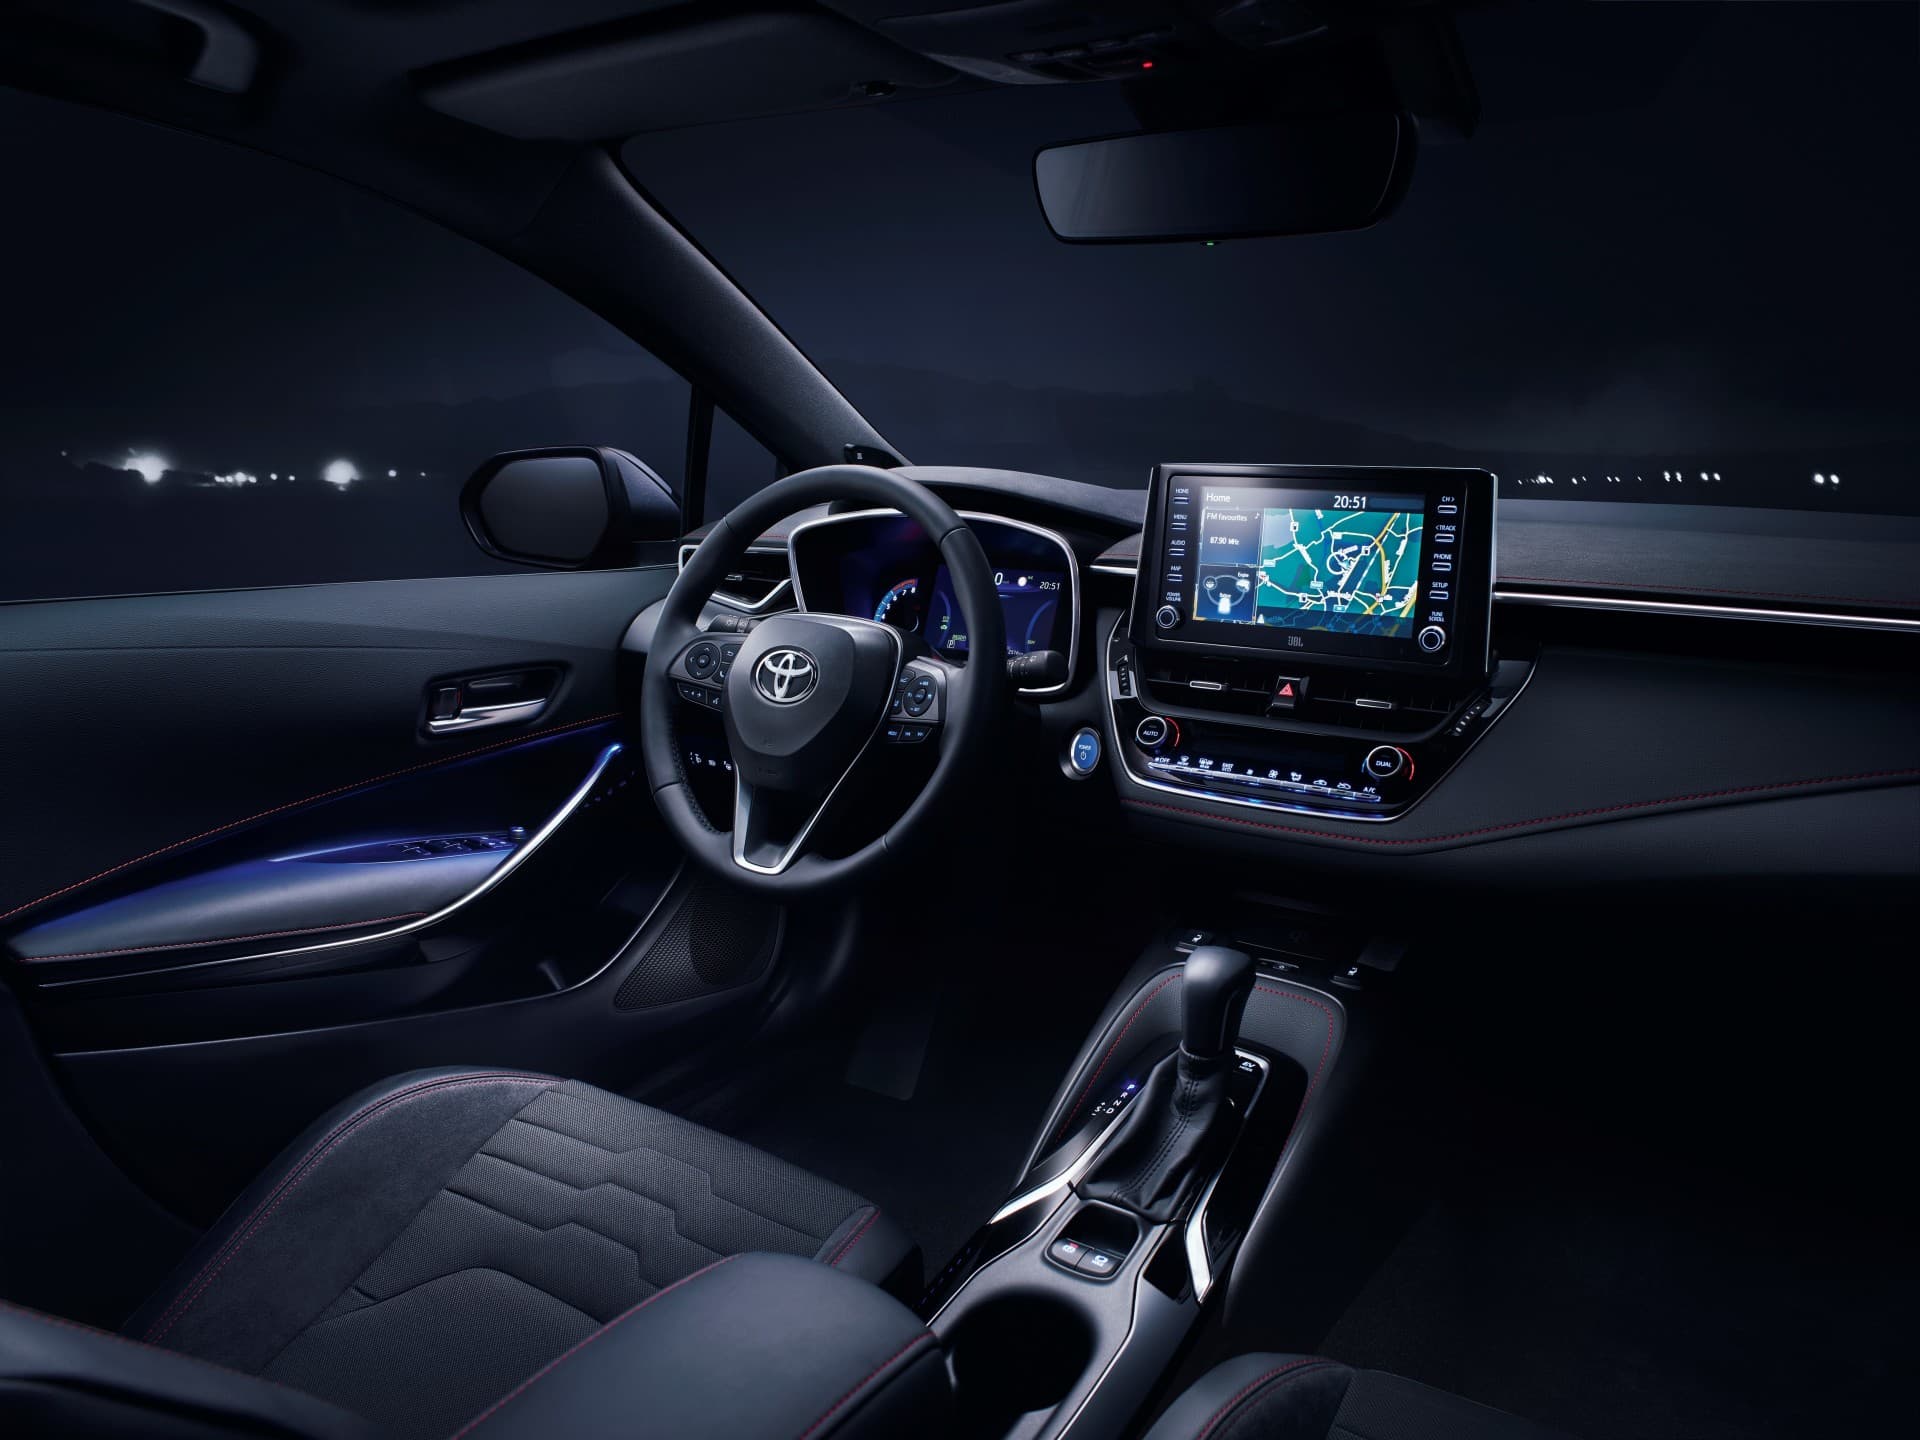 Toyota Corolla Hibrido Oferta Septiembre 2021 Interior 01